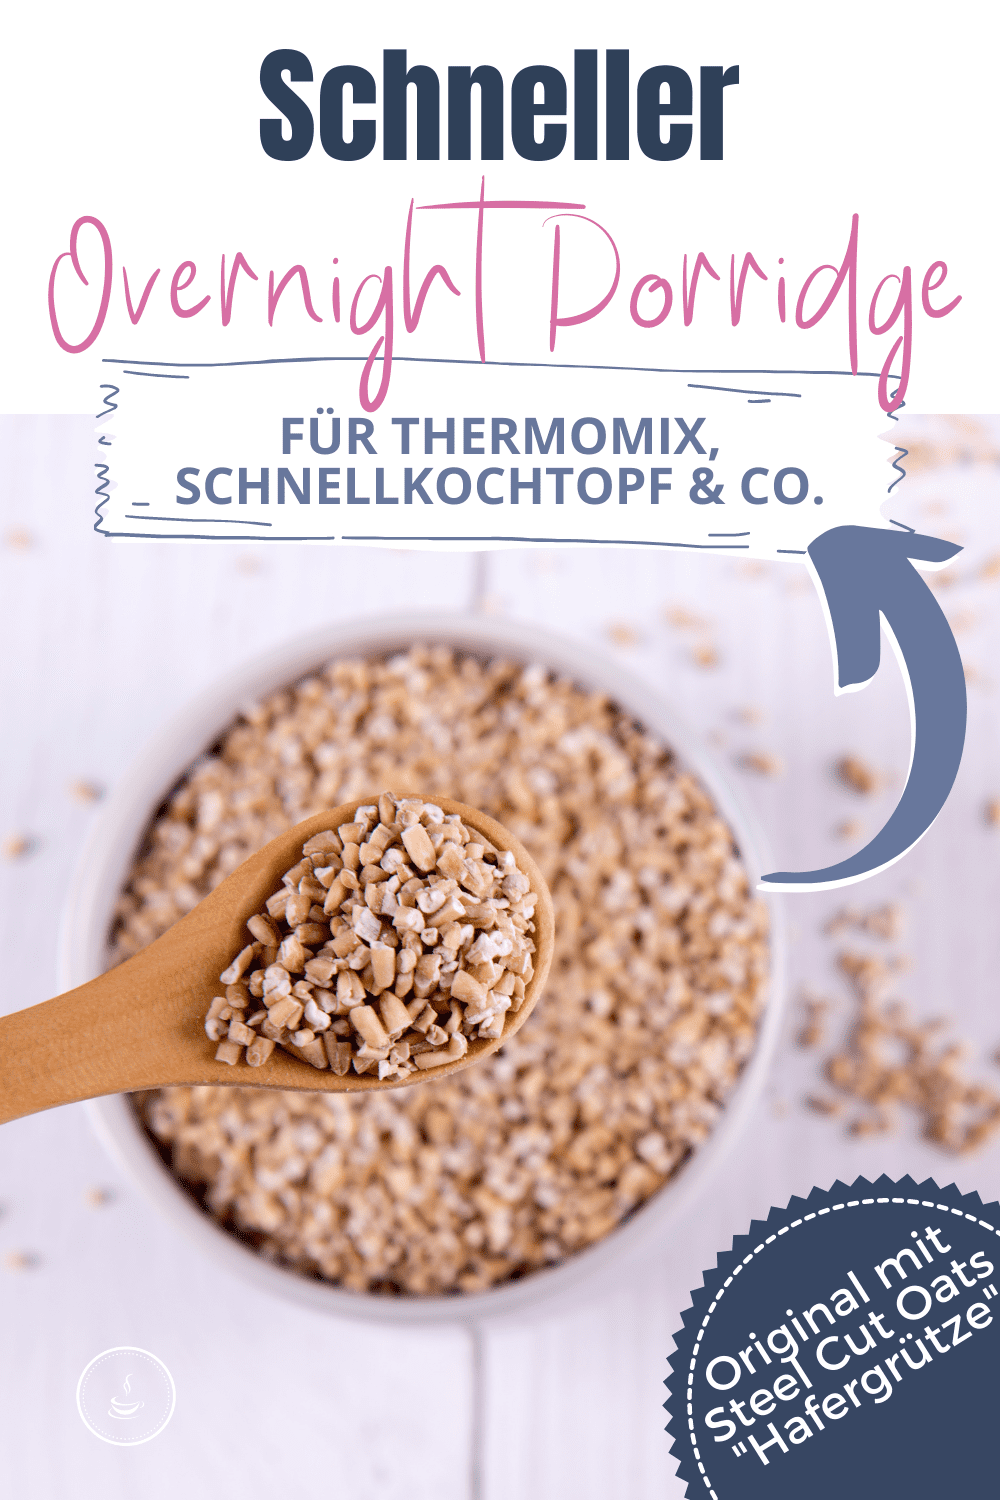 Schneller Porridge für Thermomix, Schnellkochtopf & Co. - Bild 3